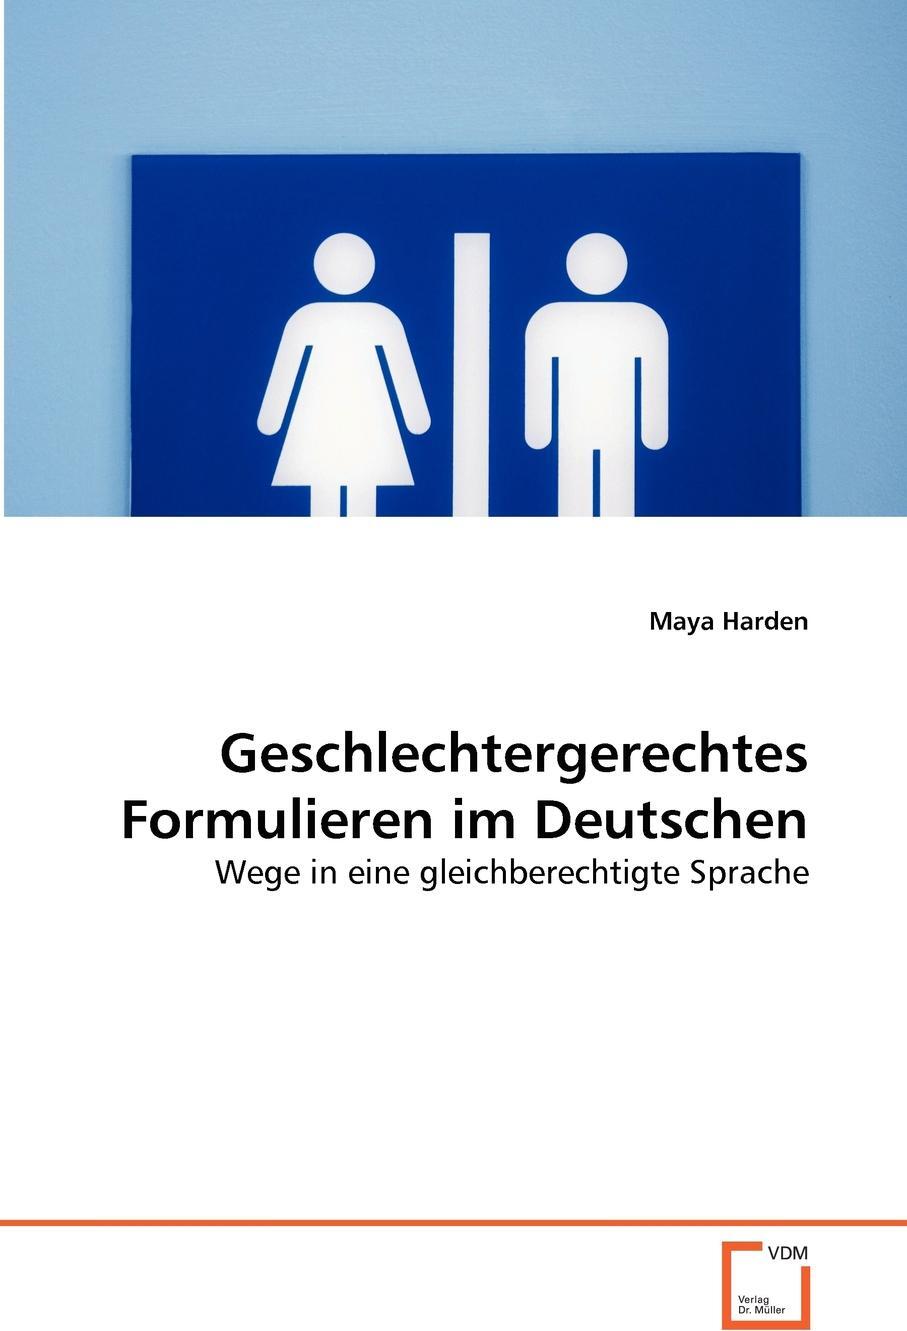 фото Geschlechtergerechtes Formulieren im Deutschen